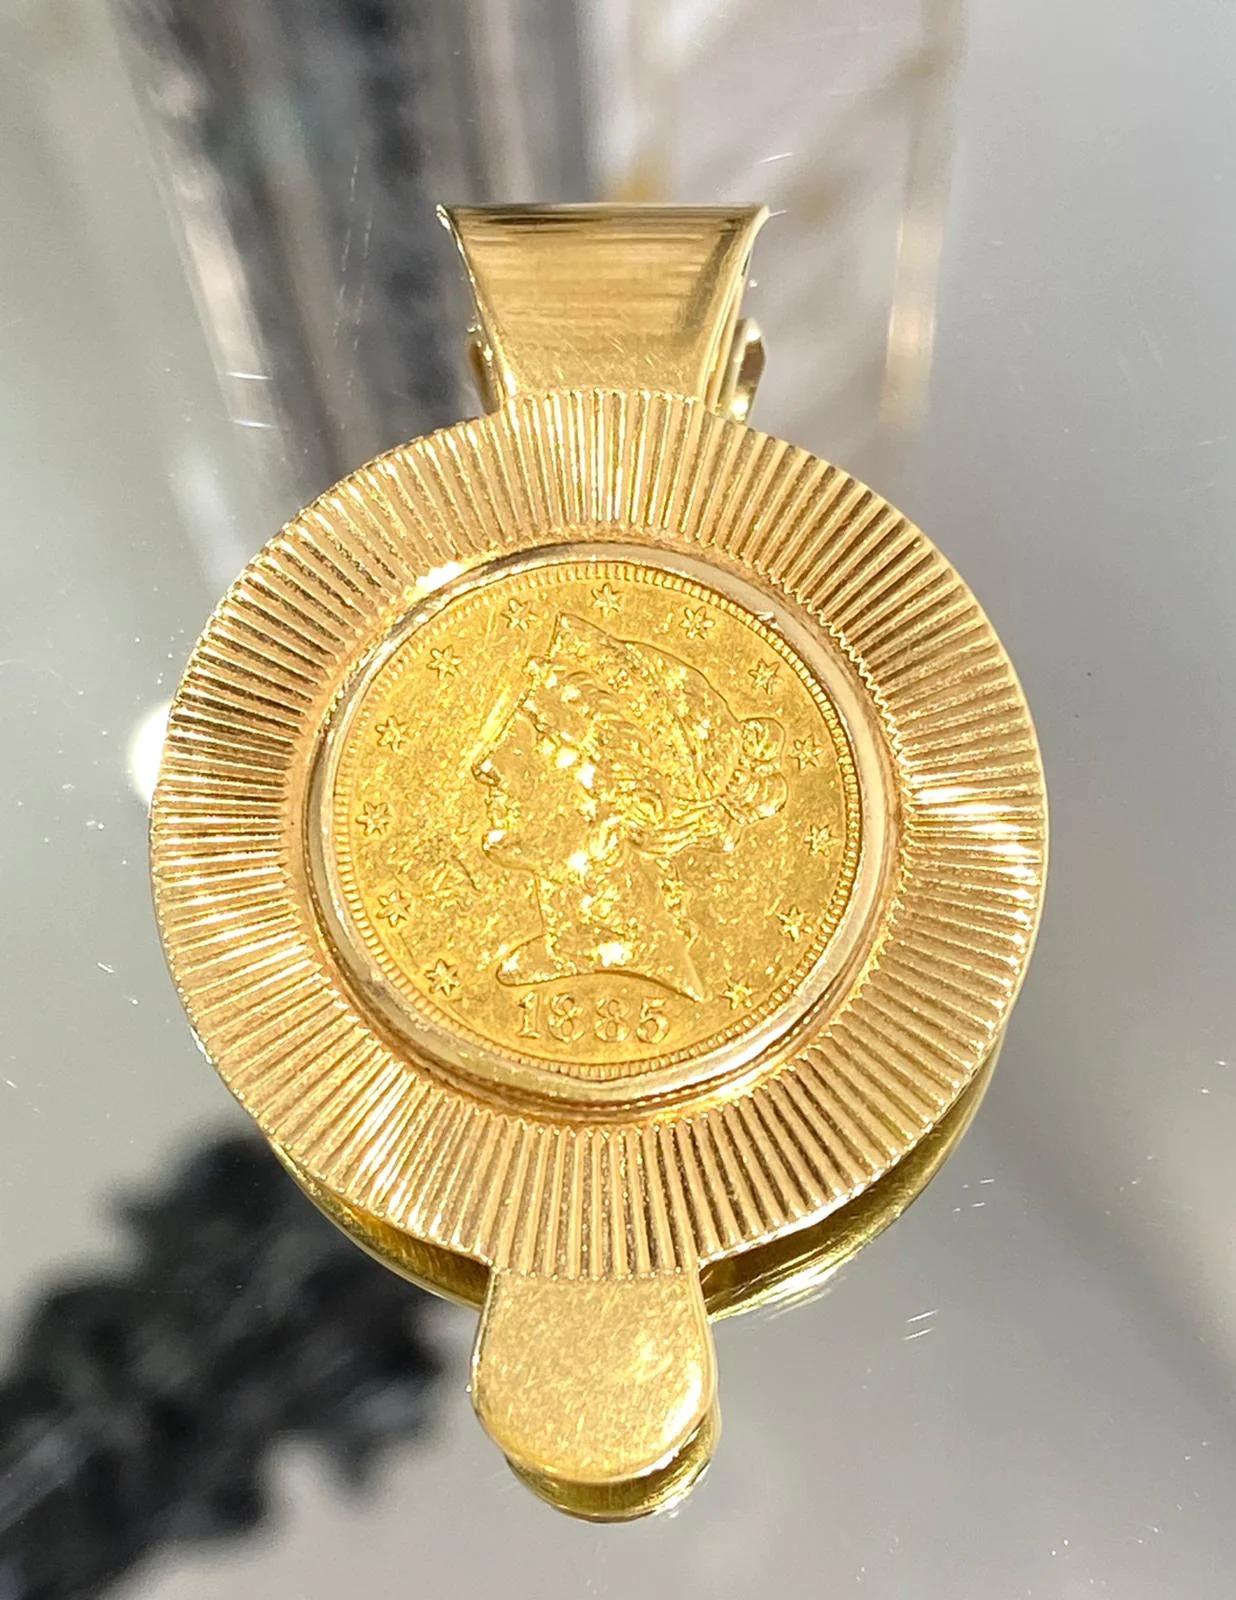 Tiffany & Co 22k Gold Coronet Head Quarter Eagle Coin Money Clip

Pièce exceptionnellement rare de Tiffany, comprenant une pièce d'or américaine de 1885 qui est une pièce de collection et qui est assise dans une monture en forme